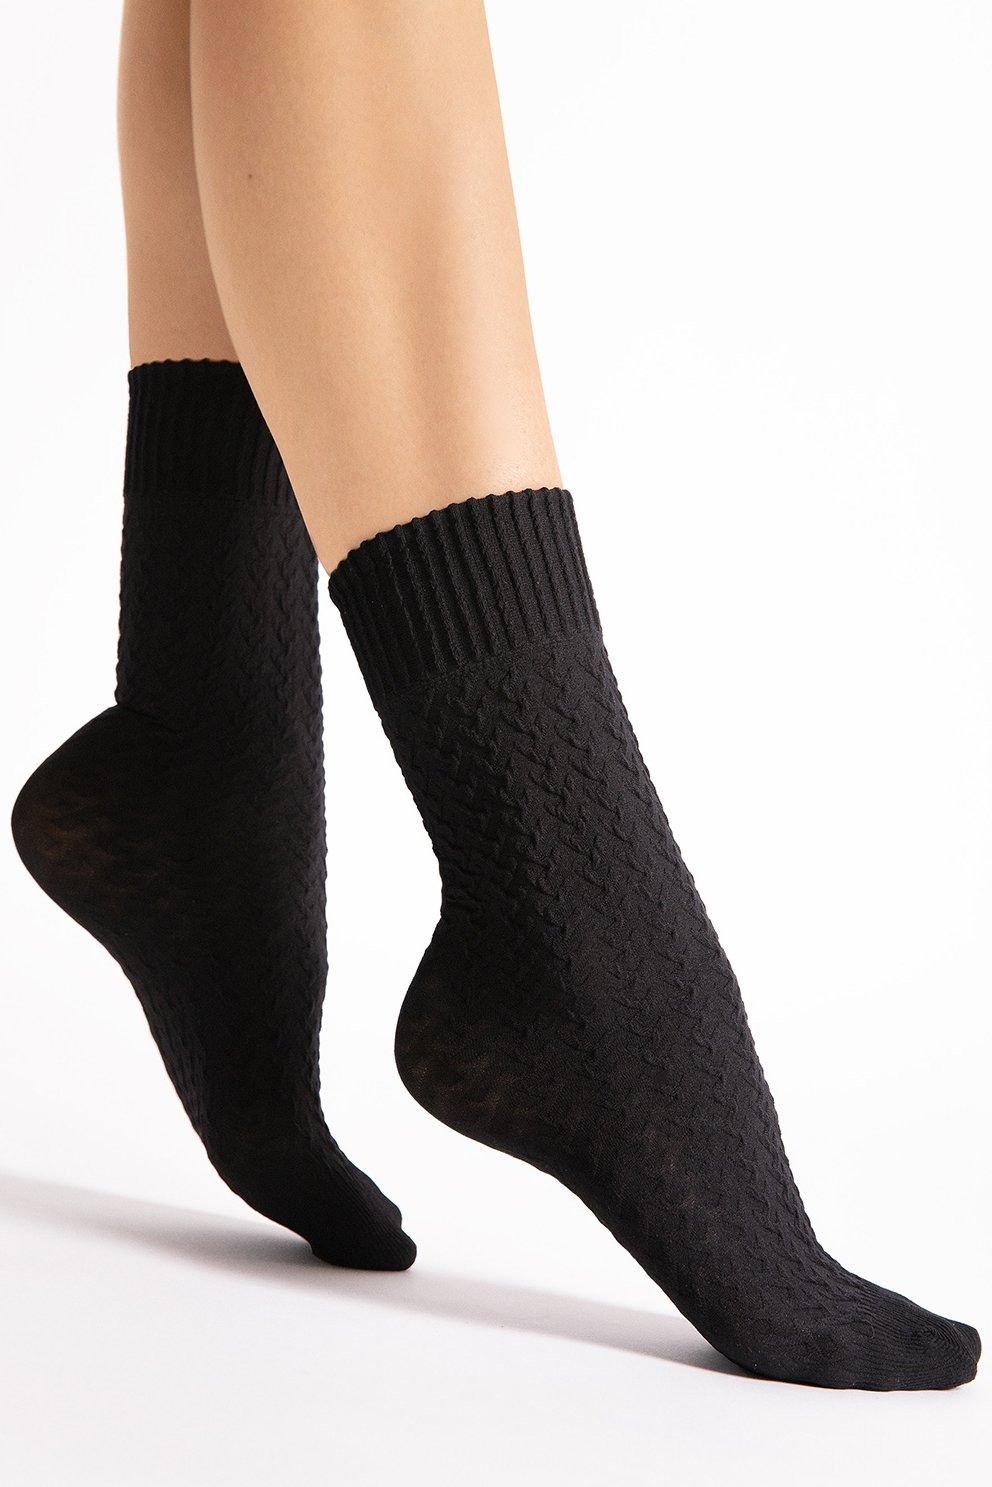 Dámské silonkové ponožky Fiore Furka pass - 60 DEN Černá Uni